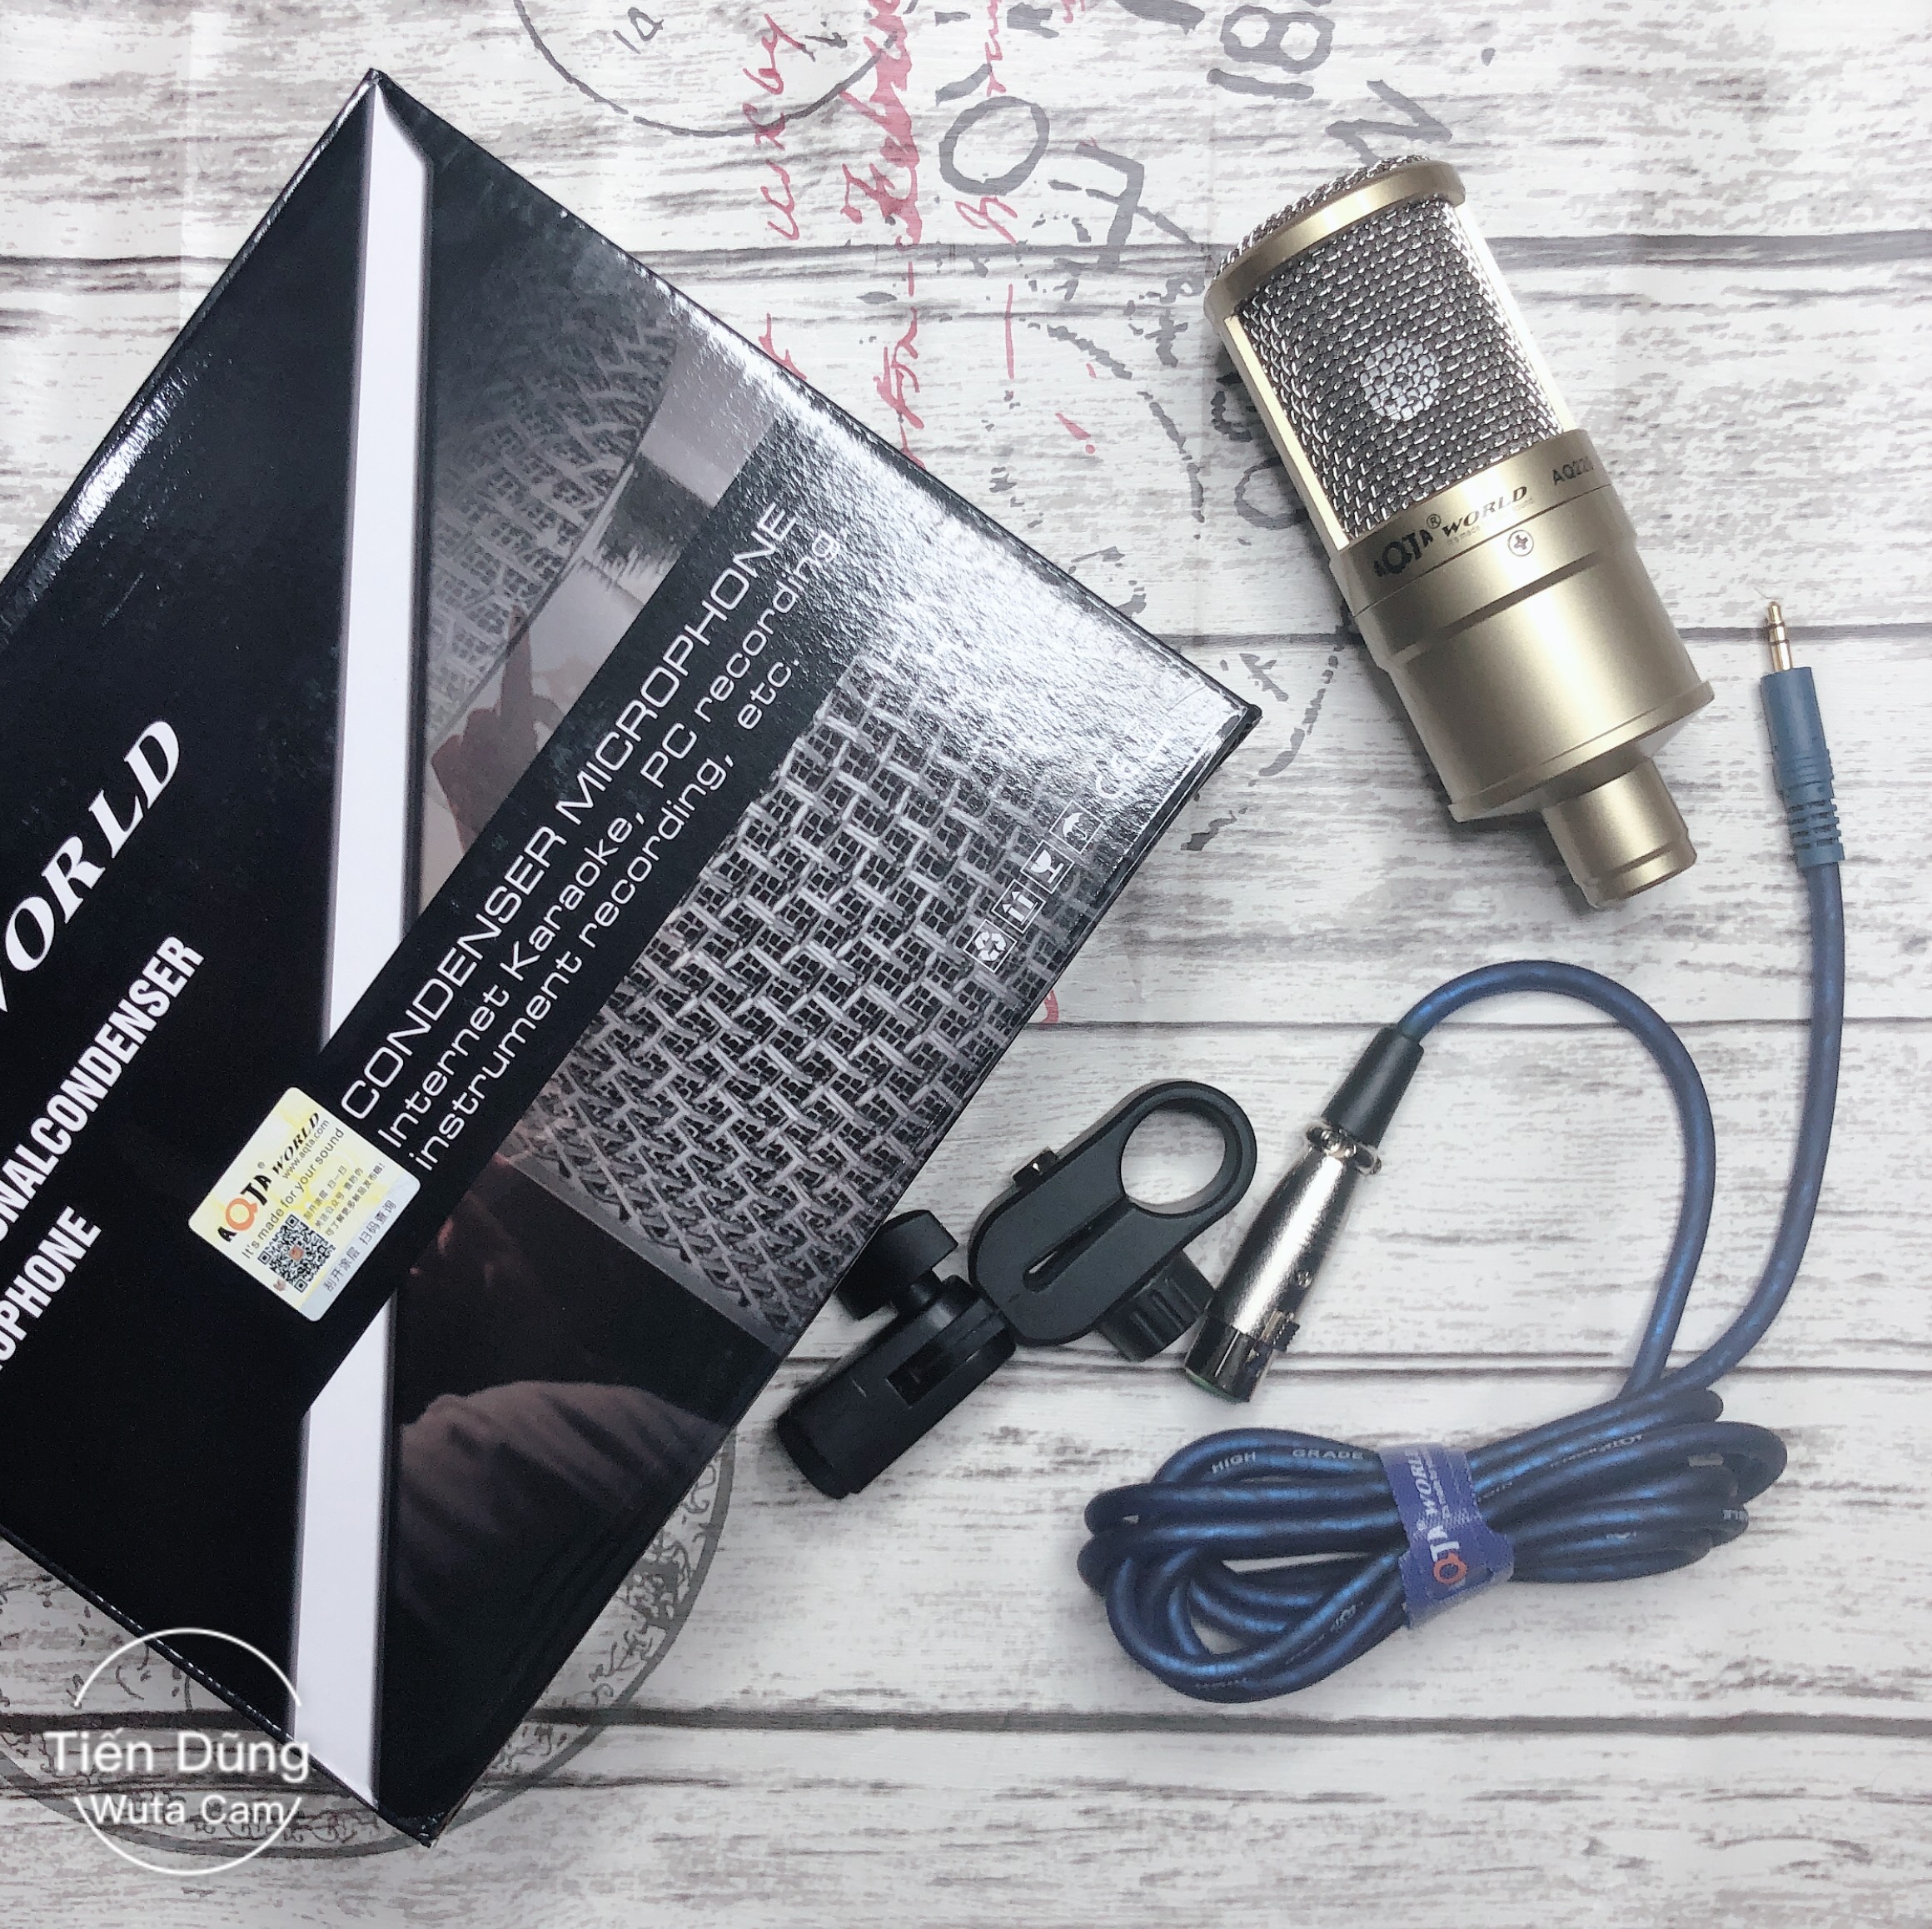 Bộ mic thu âm AQ220 sound card k10 chân kẹp dây livestream MA2- Bô live stream micro aq220 đầy đủ